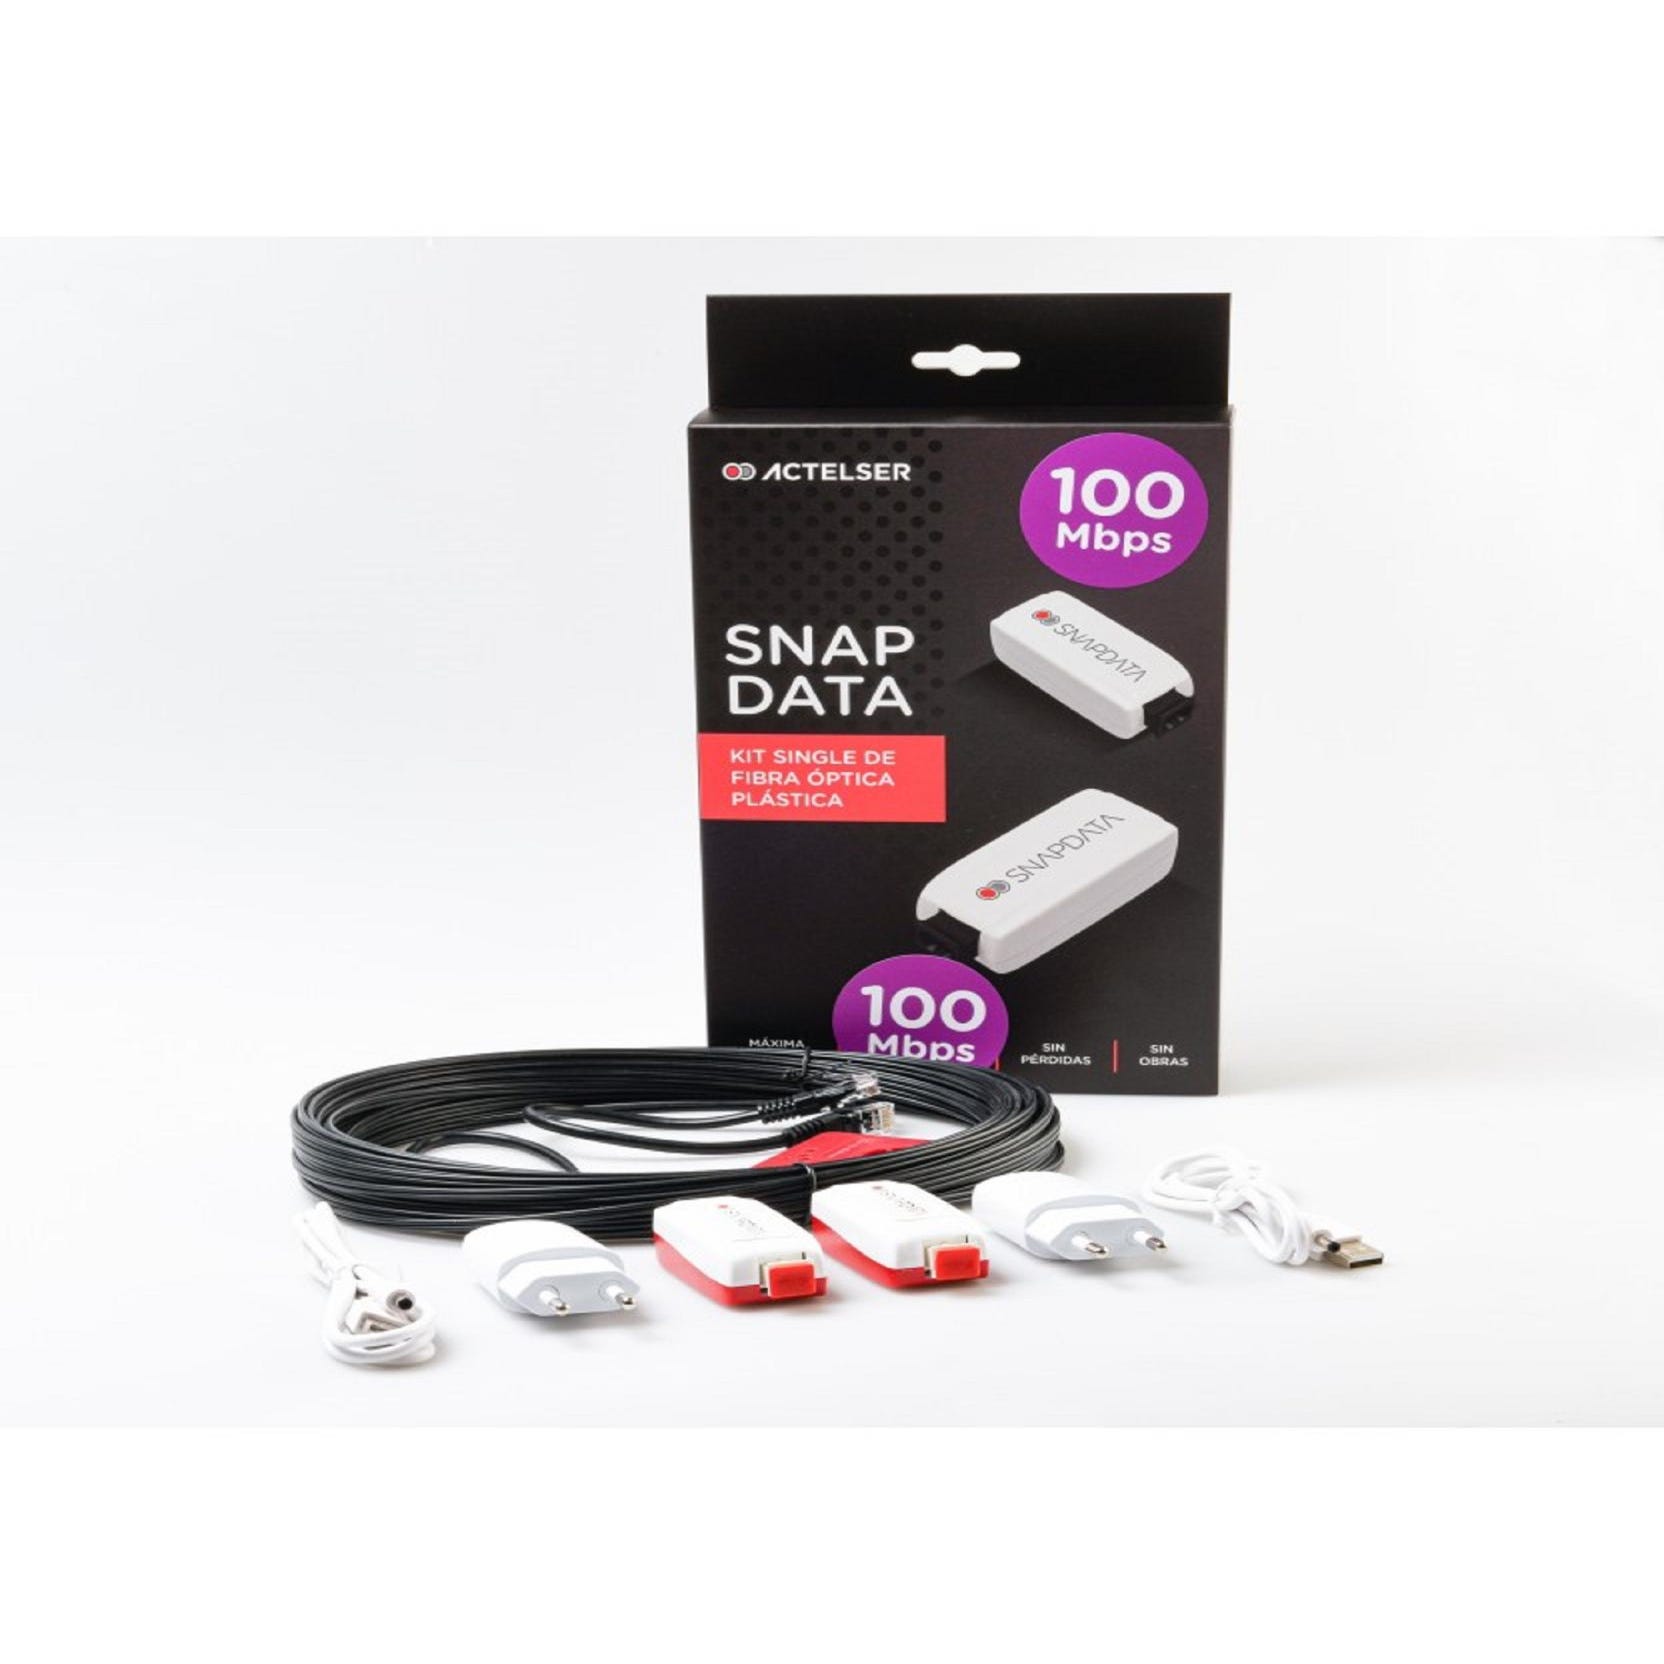 ACTELSER Kit Single 100 Mbps de Fibra Óptica Plástica Snap Data 40 metros